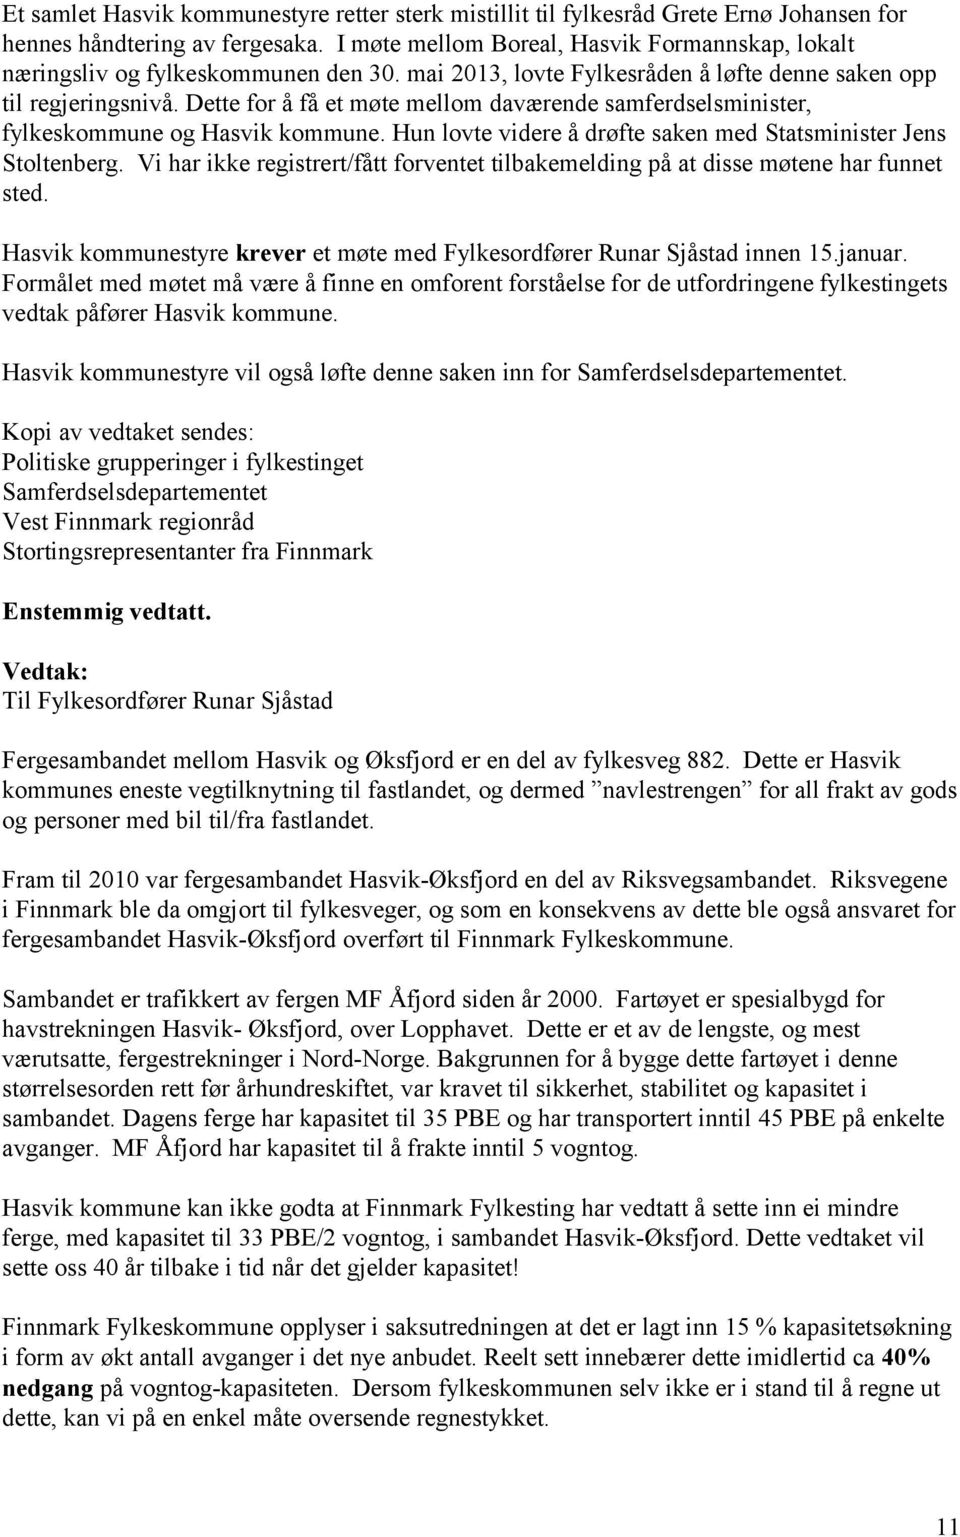 Dette for å få et møte mellom daværende samferdselsminister, fylkeskommune og Hasvik kommune. Hun lovte videre å drøfte saken med Statsminister Jens Stoltenberg.